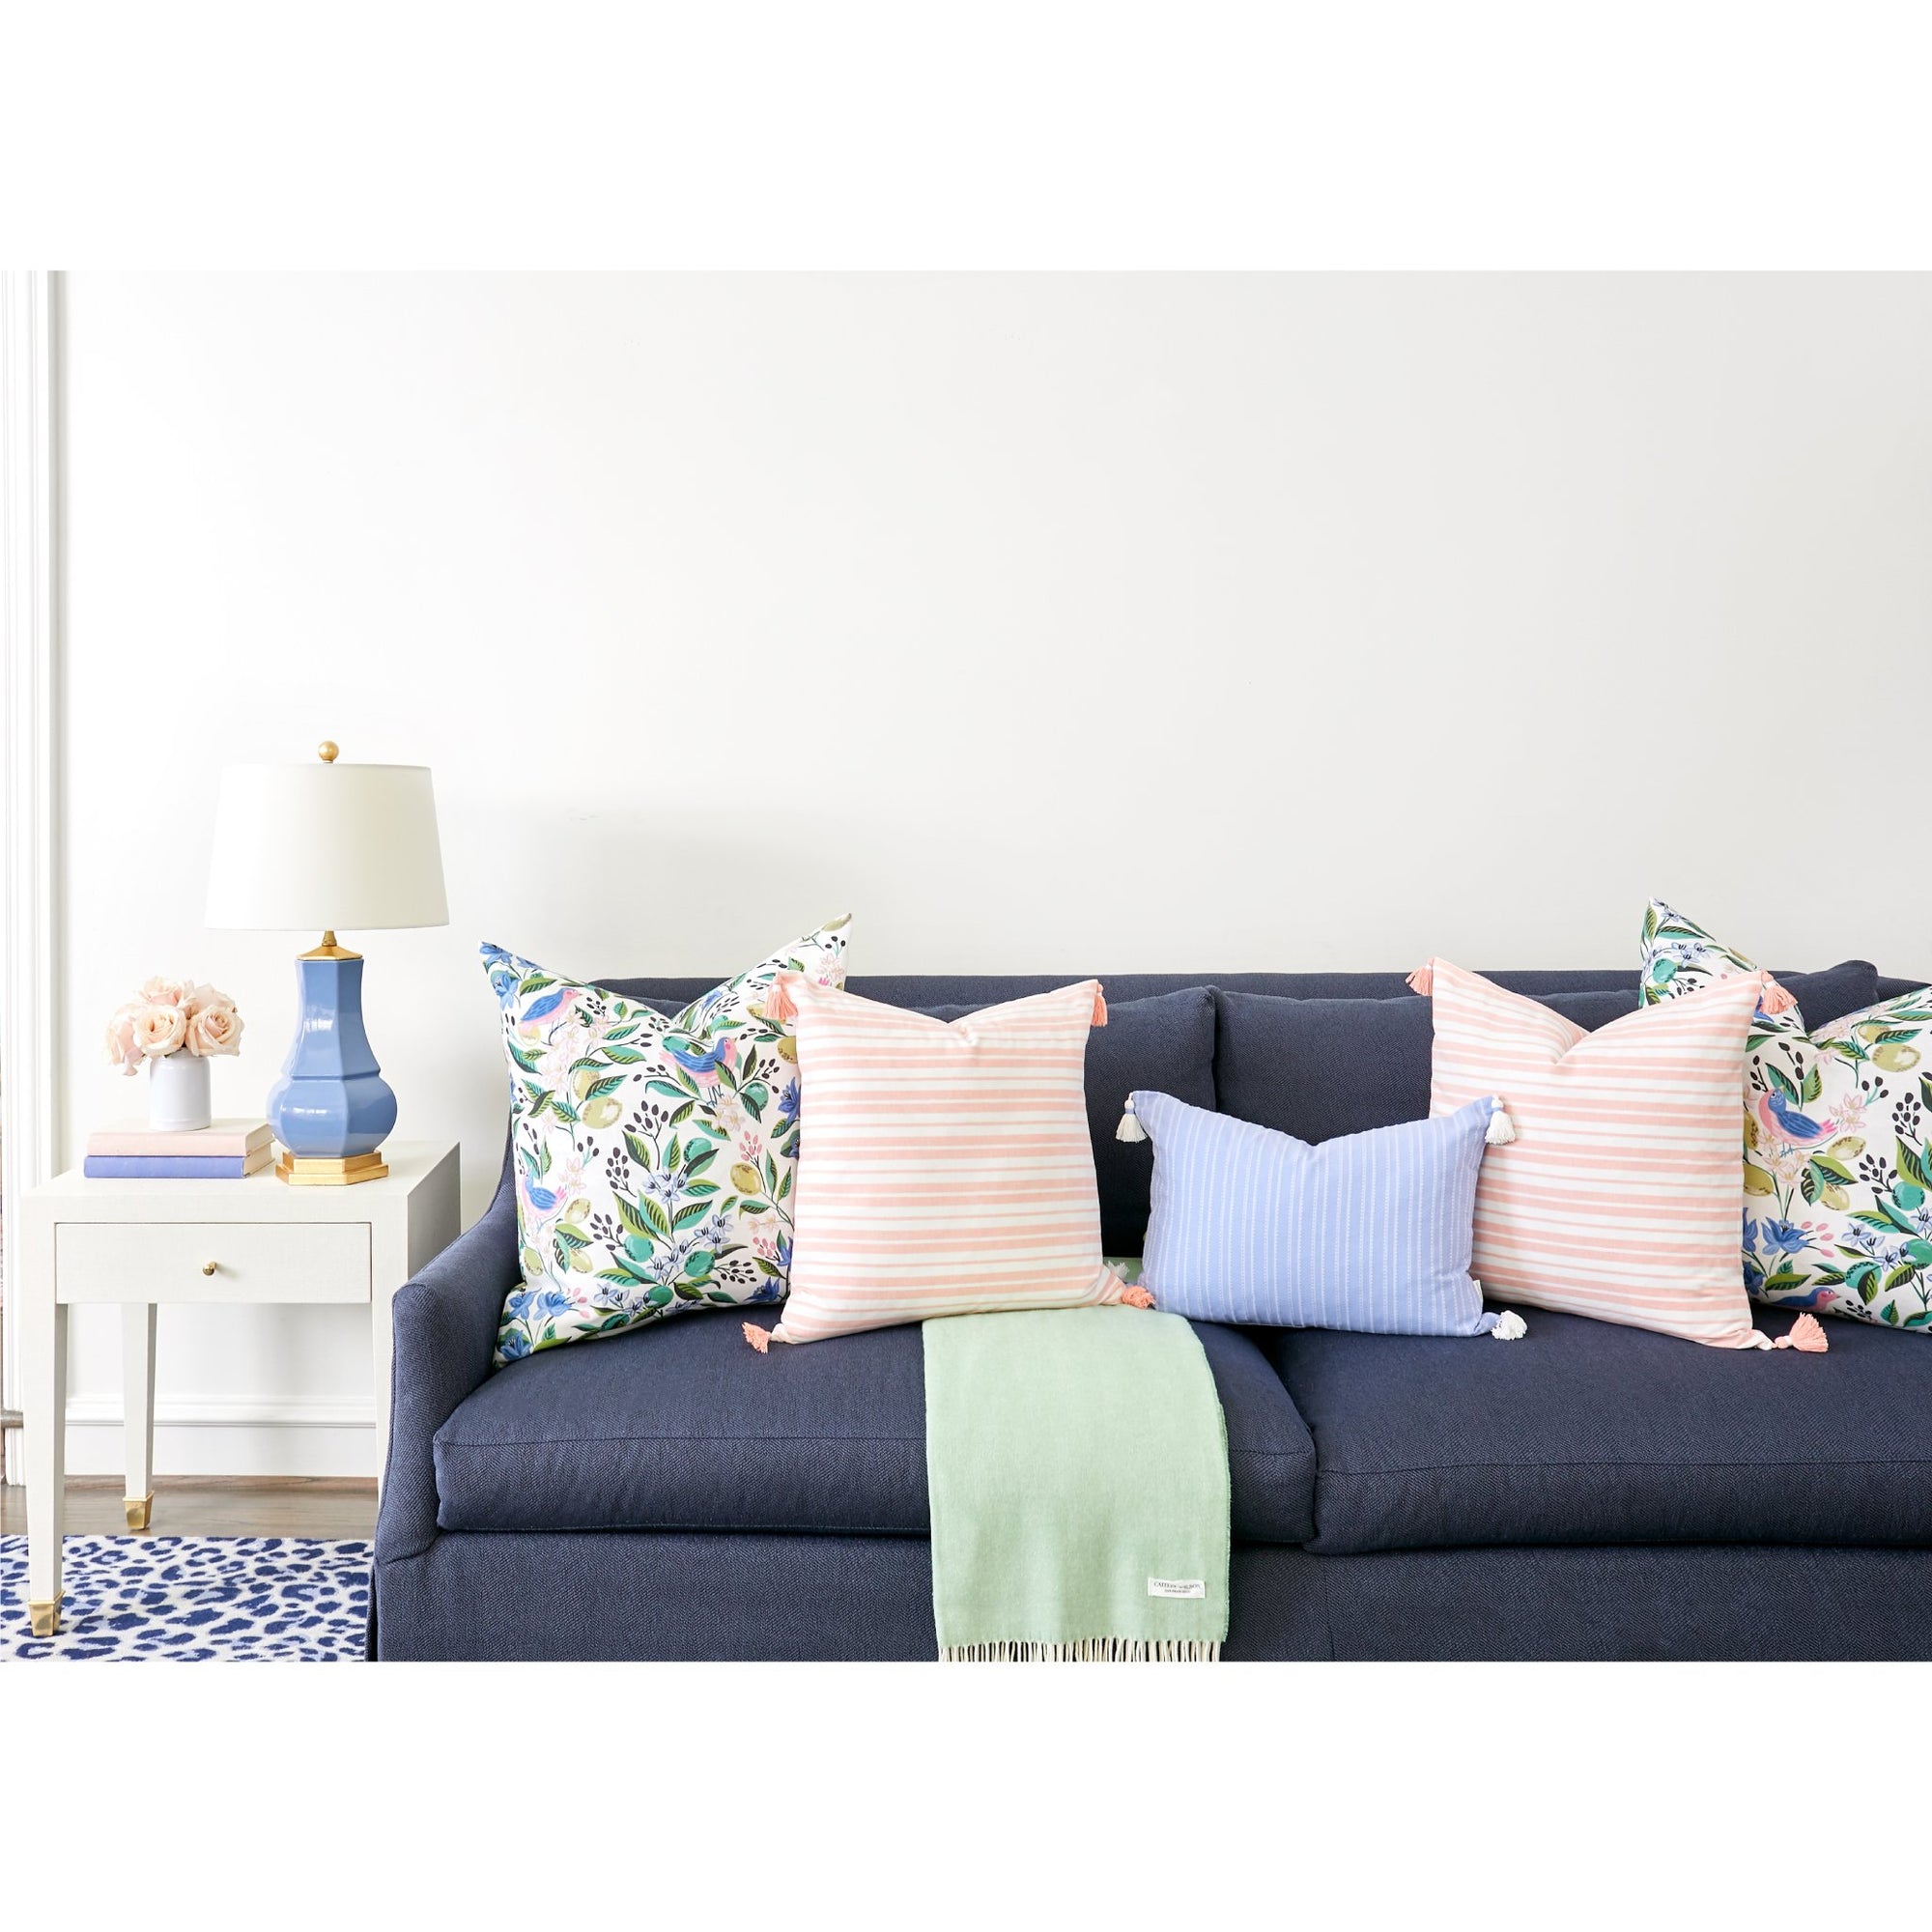 Sleek Living Room with Rowan Sofa in Herringbone Navy